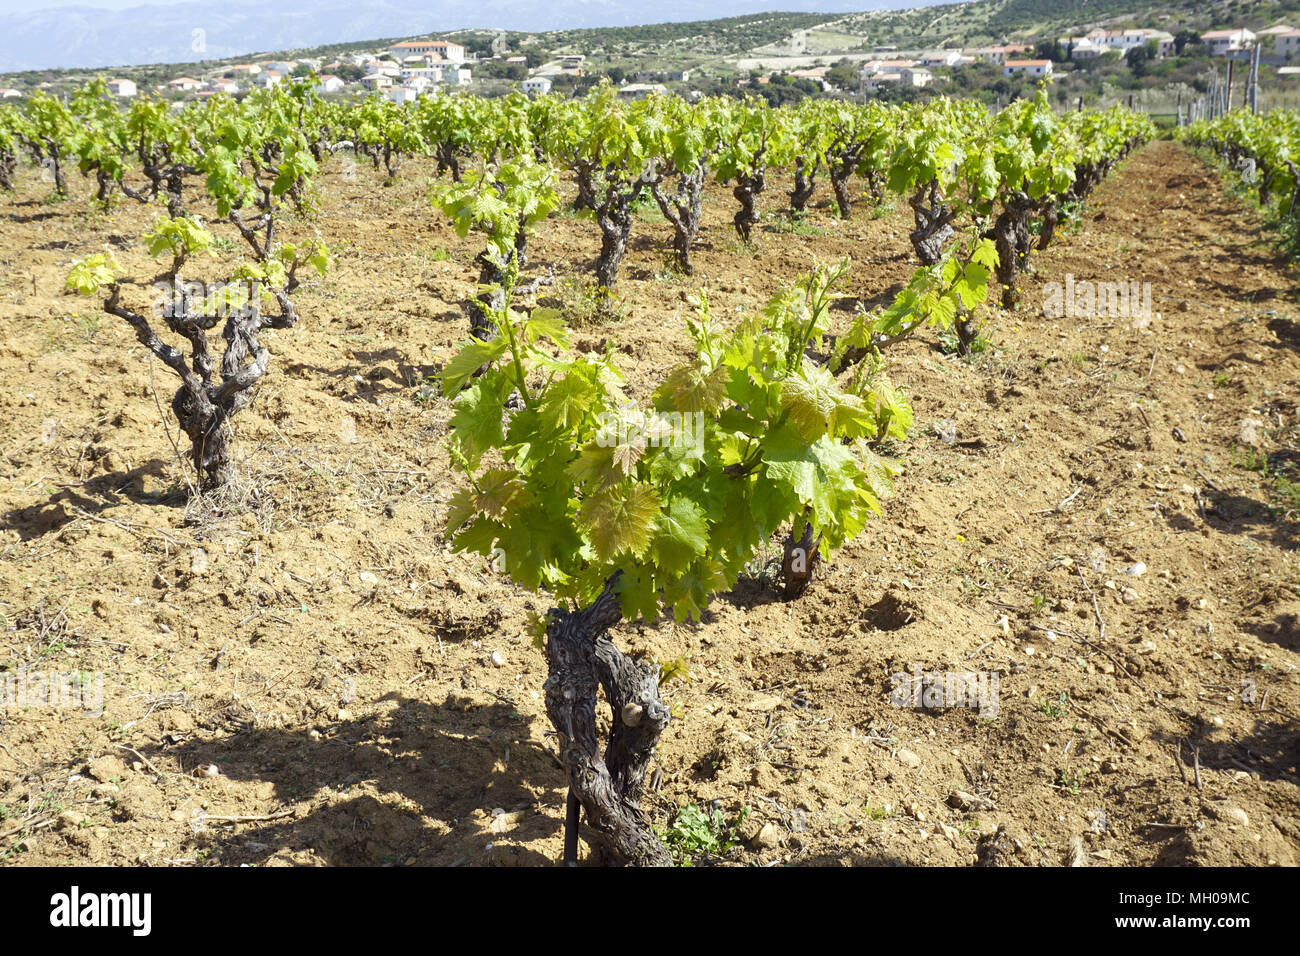 Vineyard rangées sur sunshine, journée de printemps. Vieille vigne de cépage caractéristique de l'île de Pag Croatie Banque D'Images